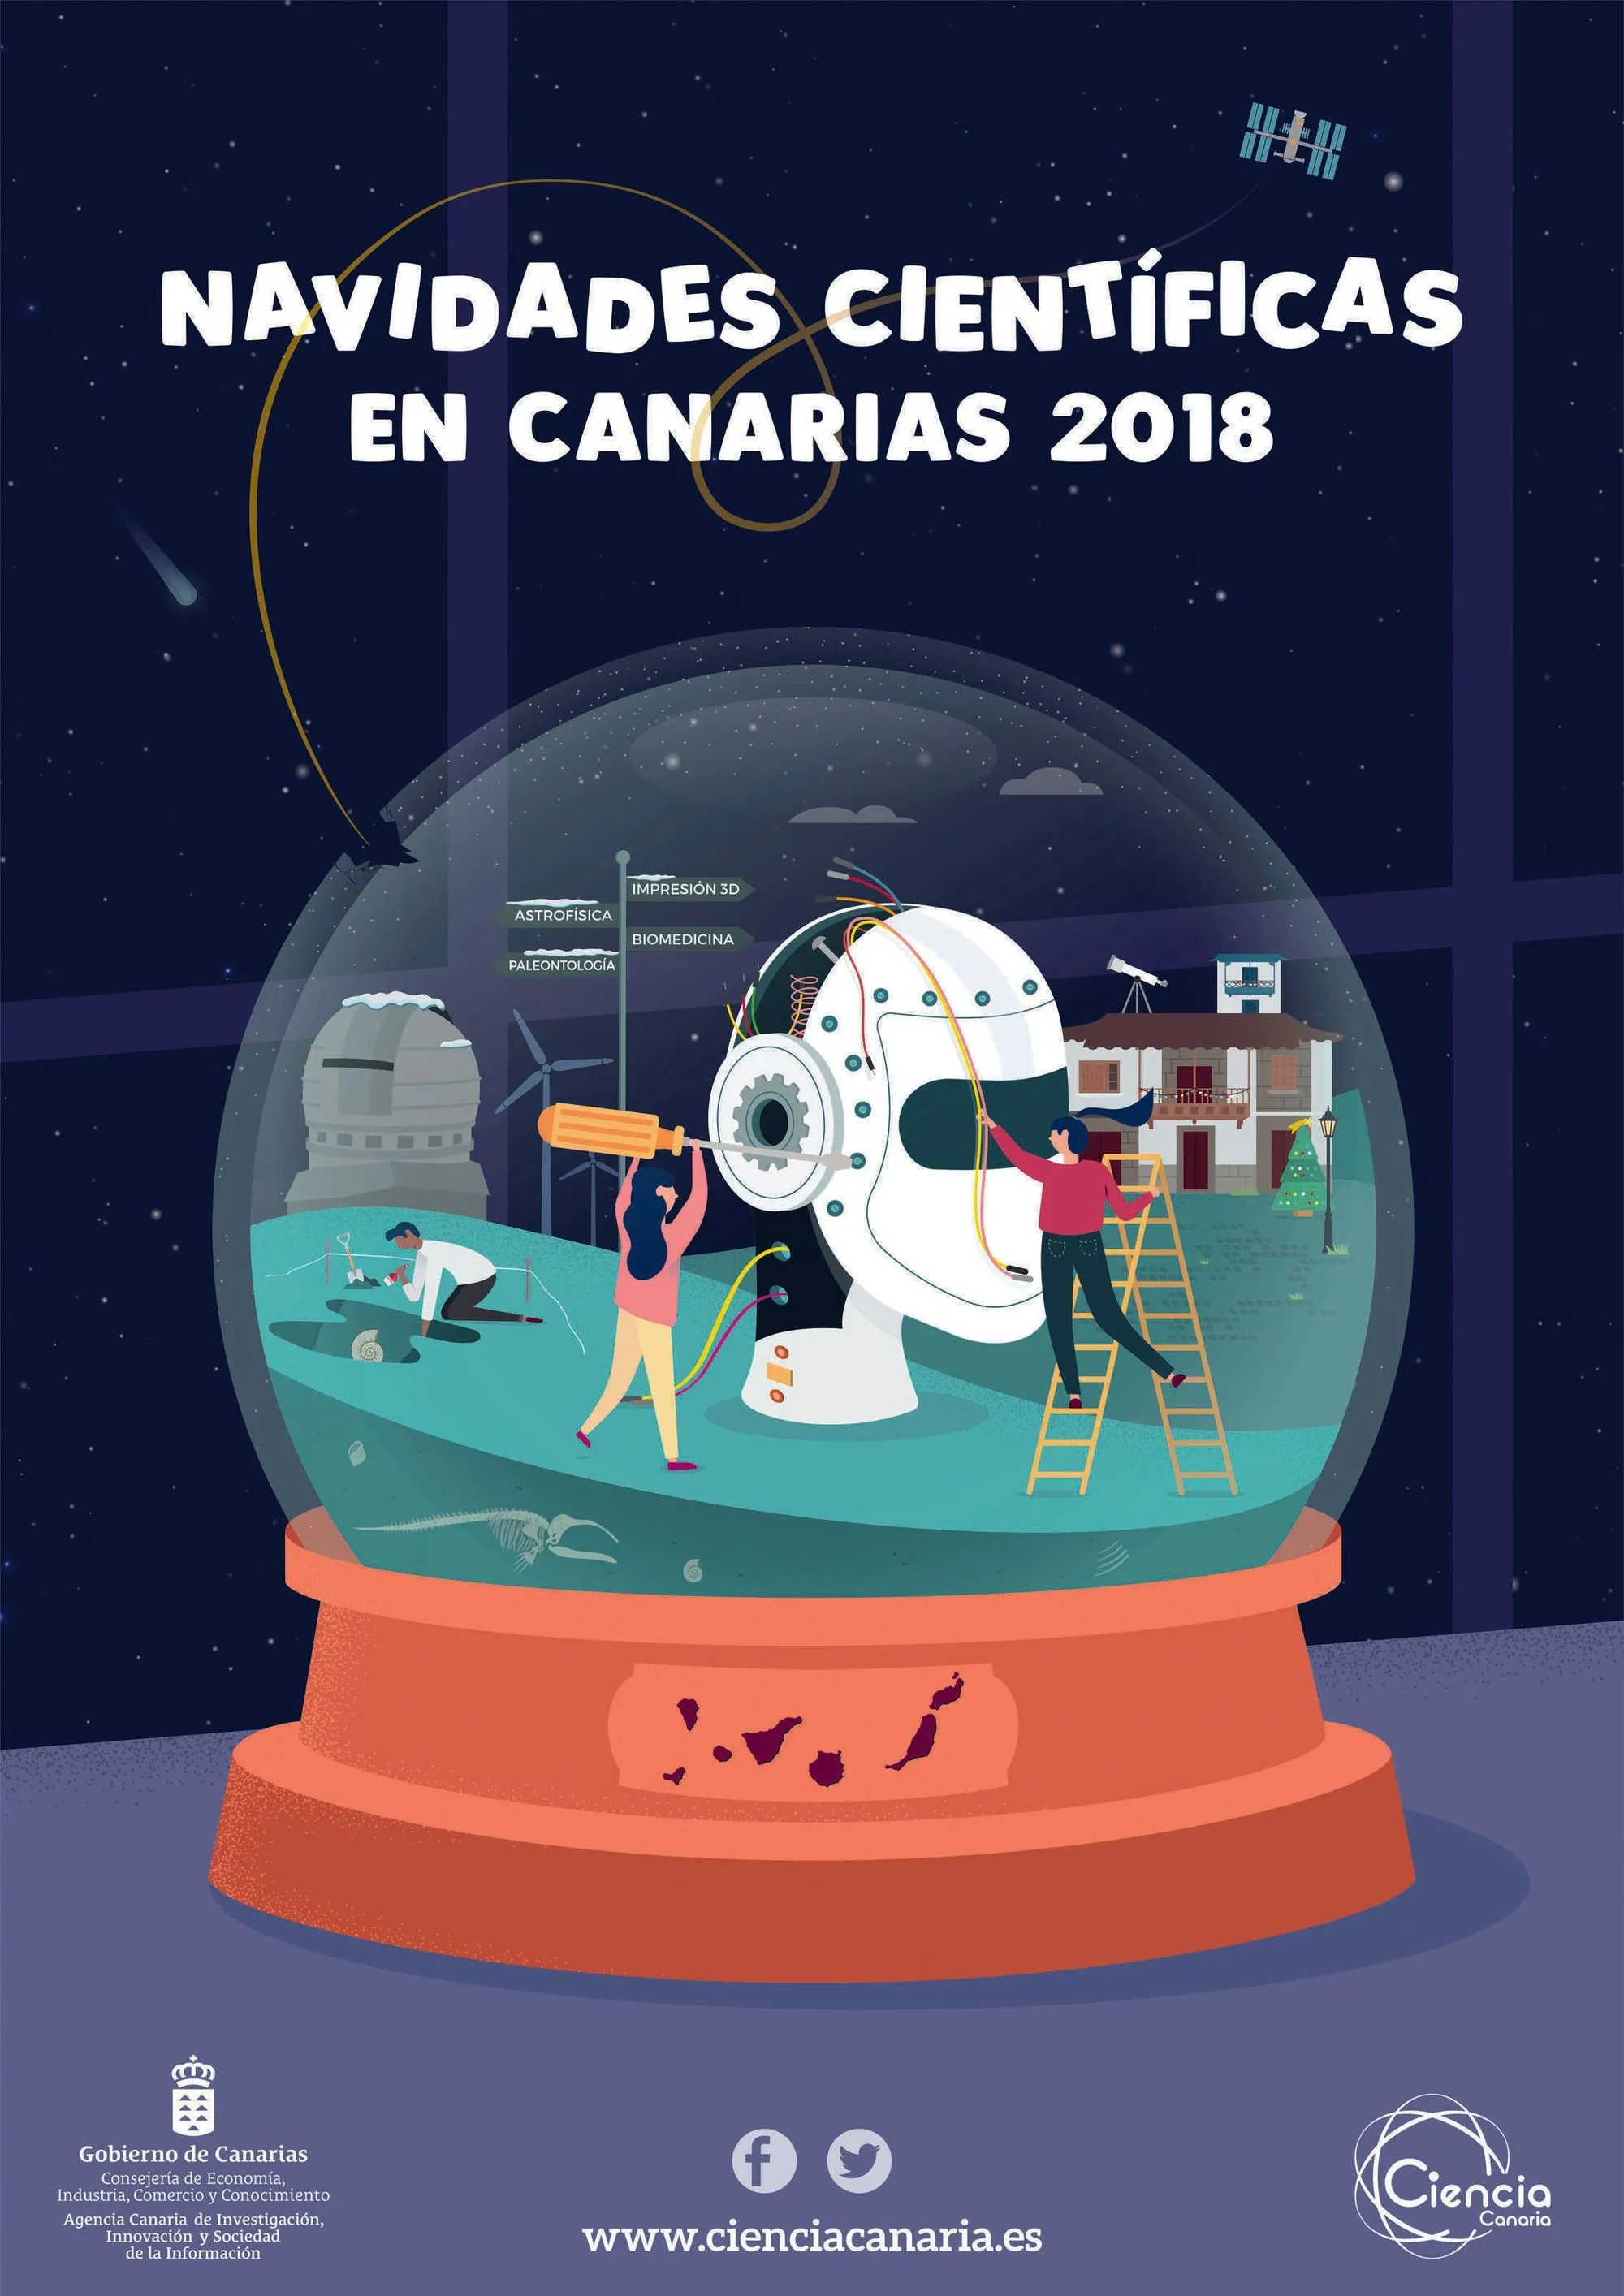 Navidades Científicas en Canarias 2018, Instituto Tecnológico de Canarias, 2018.